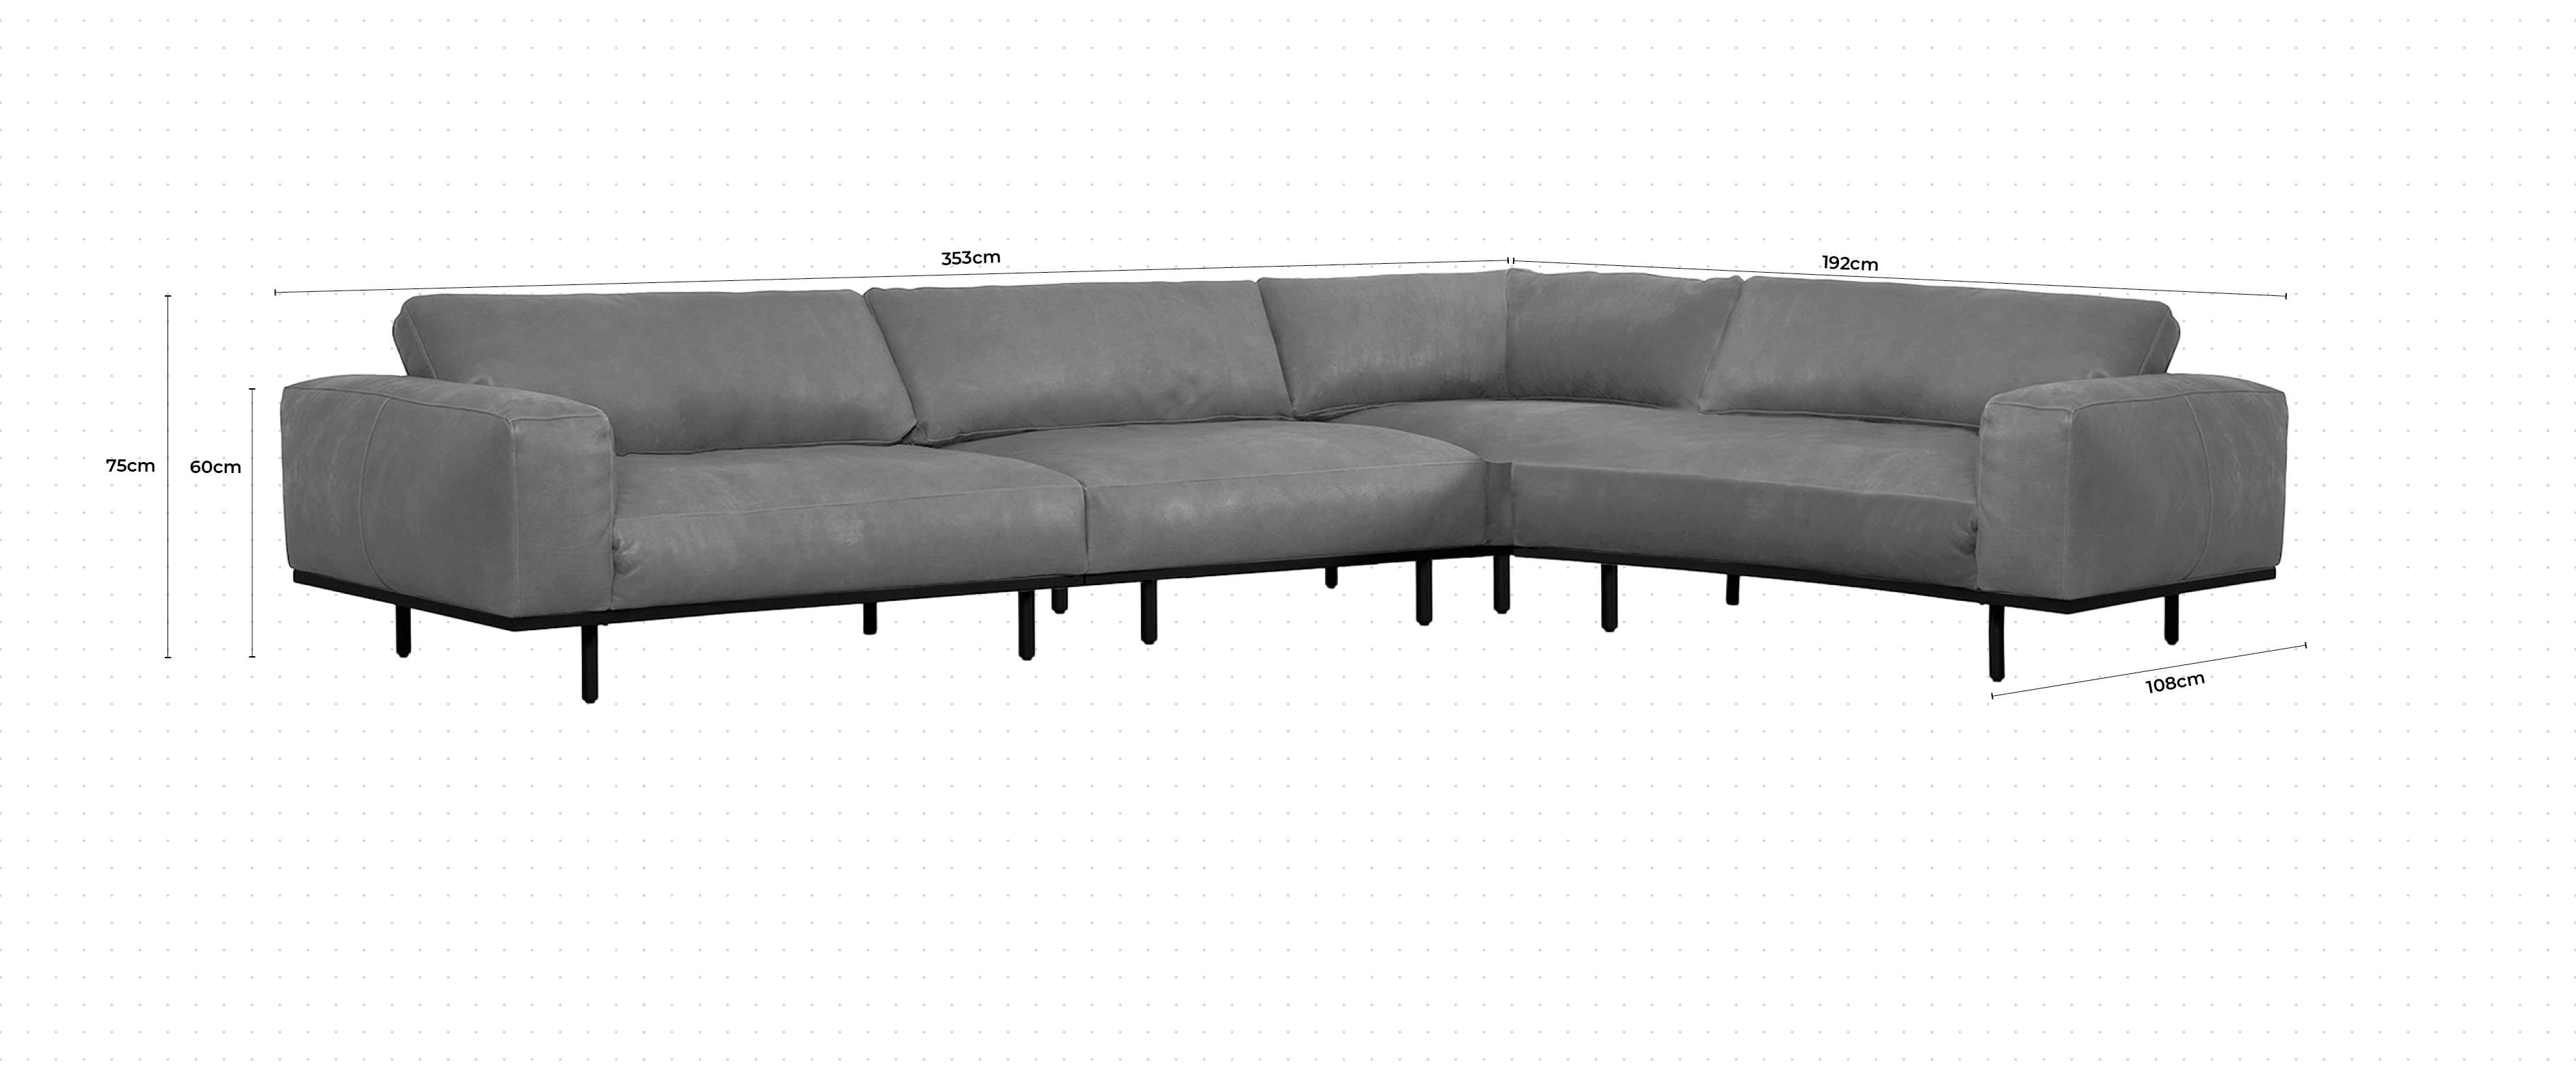 Nougat Corner Sofa RHF dimensions